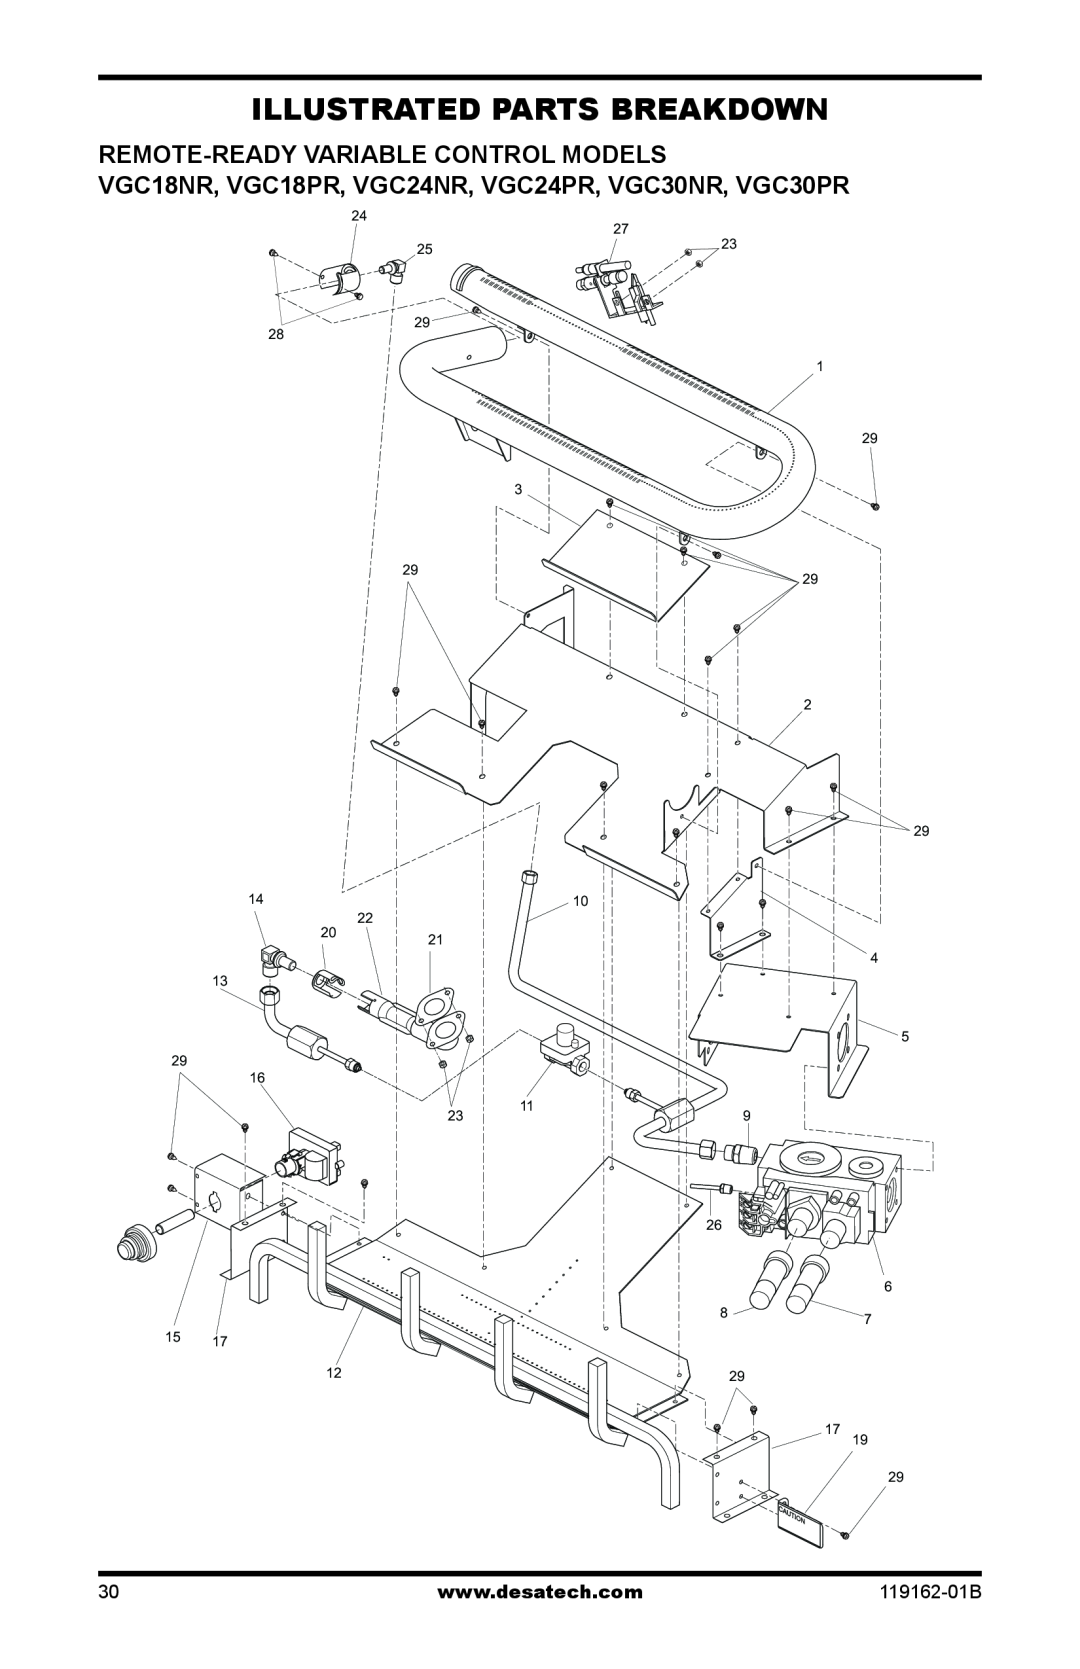 Desa VGC24NR/PR, VGC30NR/PR installation manual Illustrated Parts Breakdown, Remote-ReadyVariable Control Models 